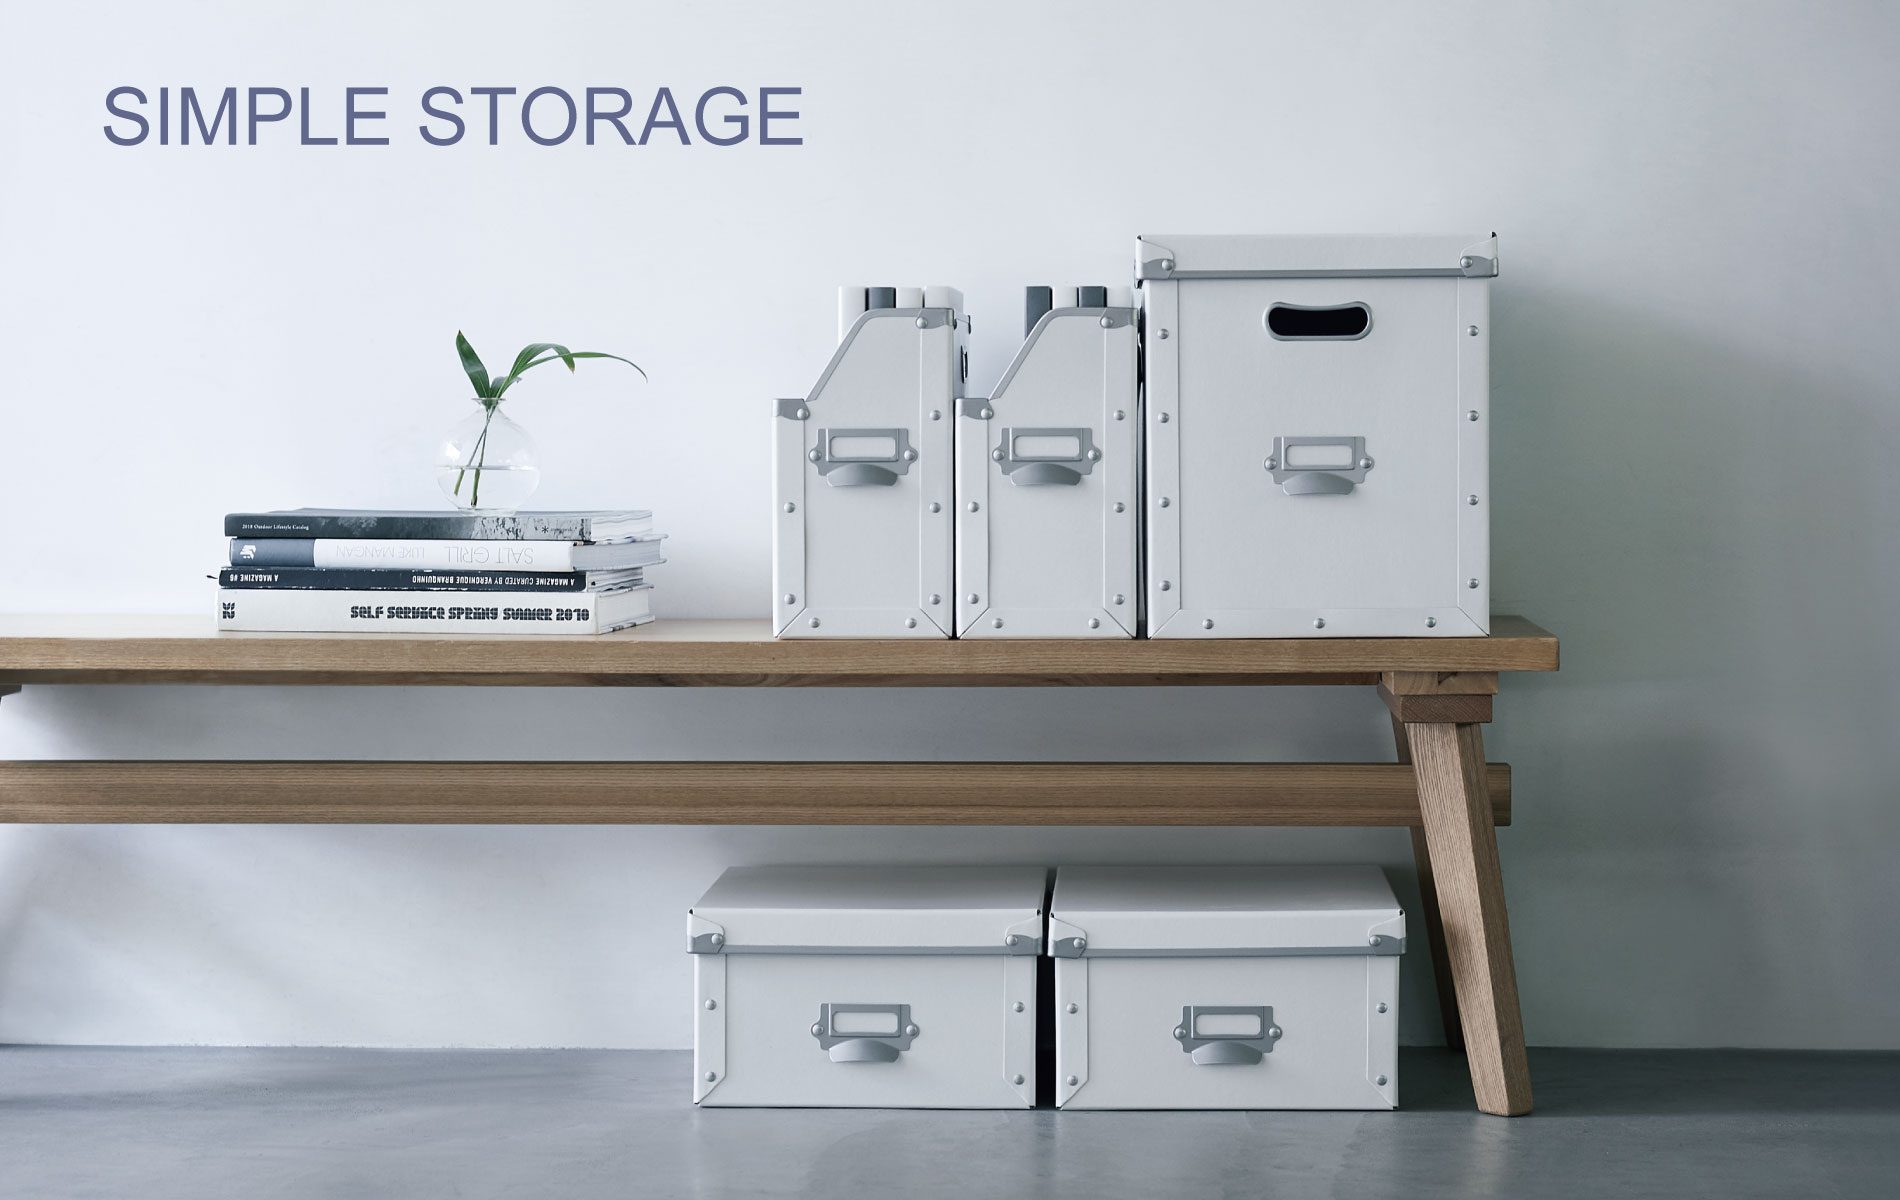 Simple storage